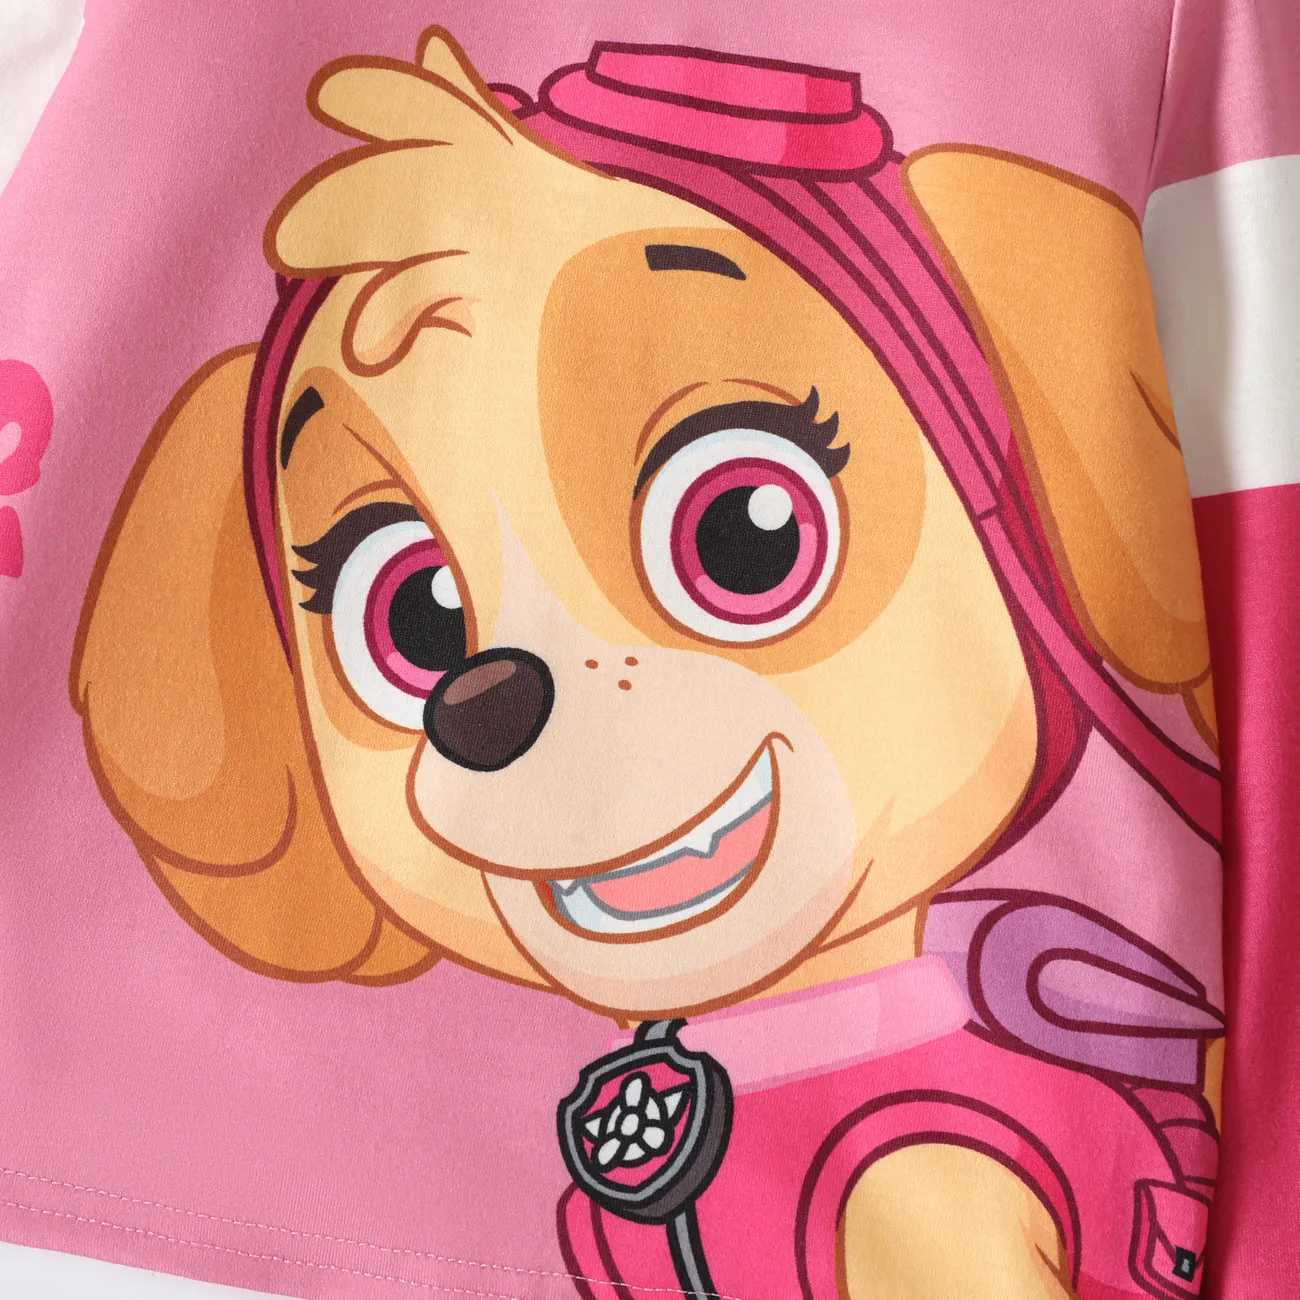 Patrulla de cachorros Niño pequeño Unisex Infantil Perro Manga larga Camiseta Rosado big image 1